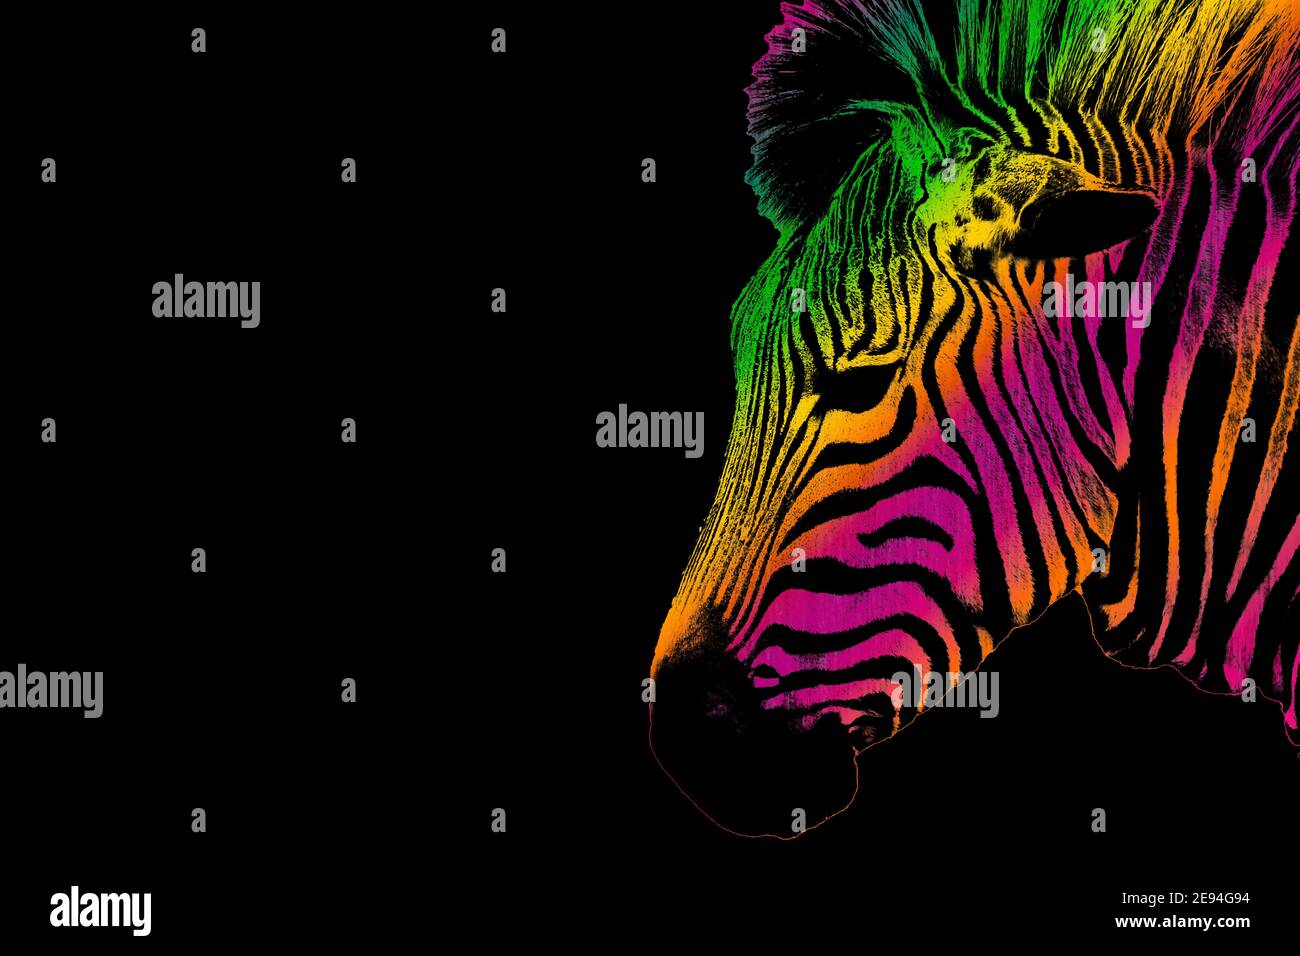 Immagine di una testa Zebra che guarda lateralmente con colorate strisce arcobaleno su uno sfondo nero. Foto Stock